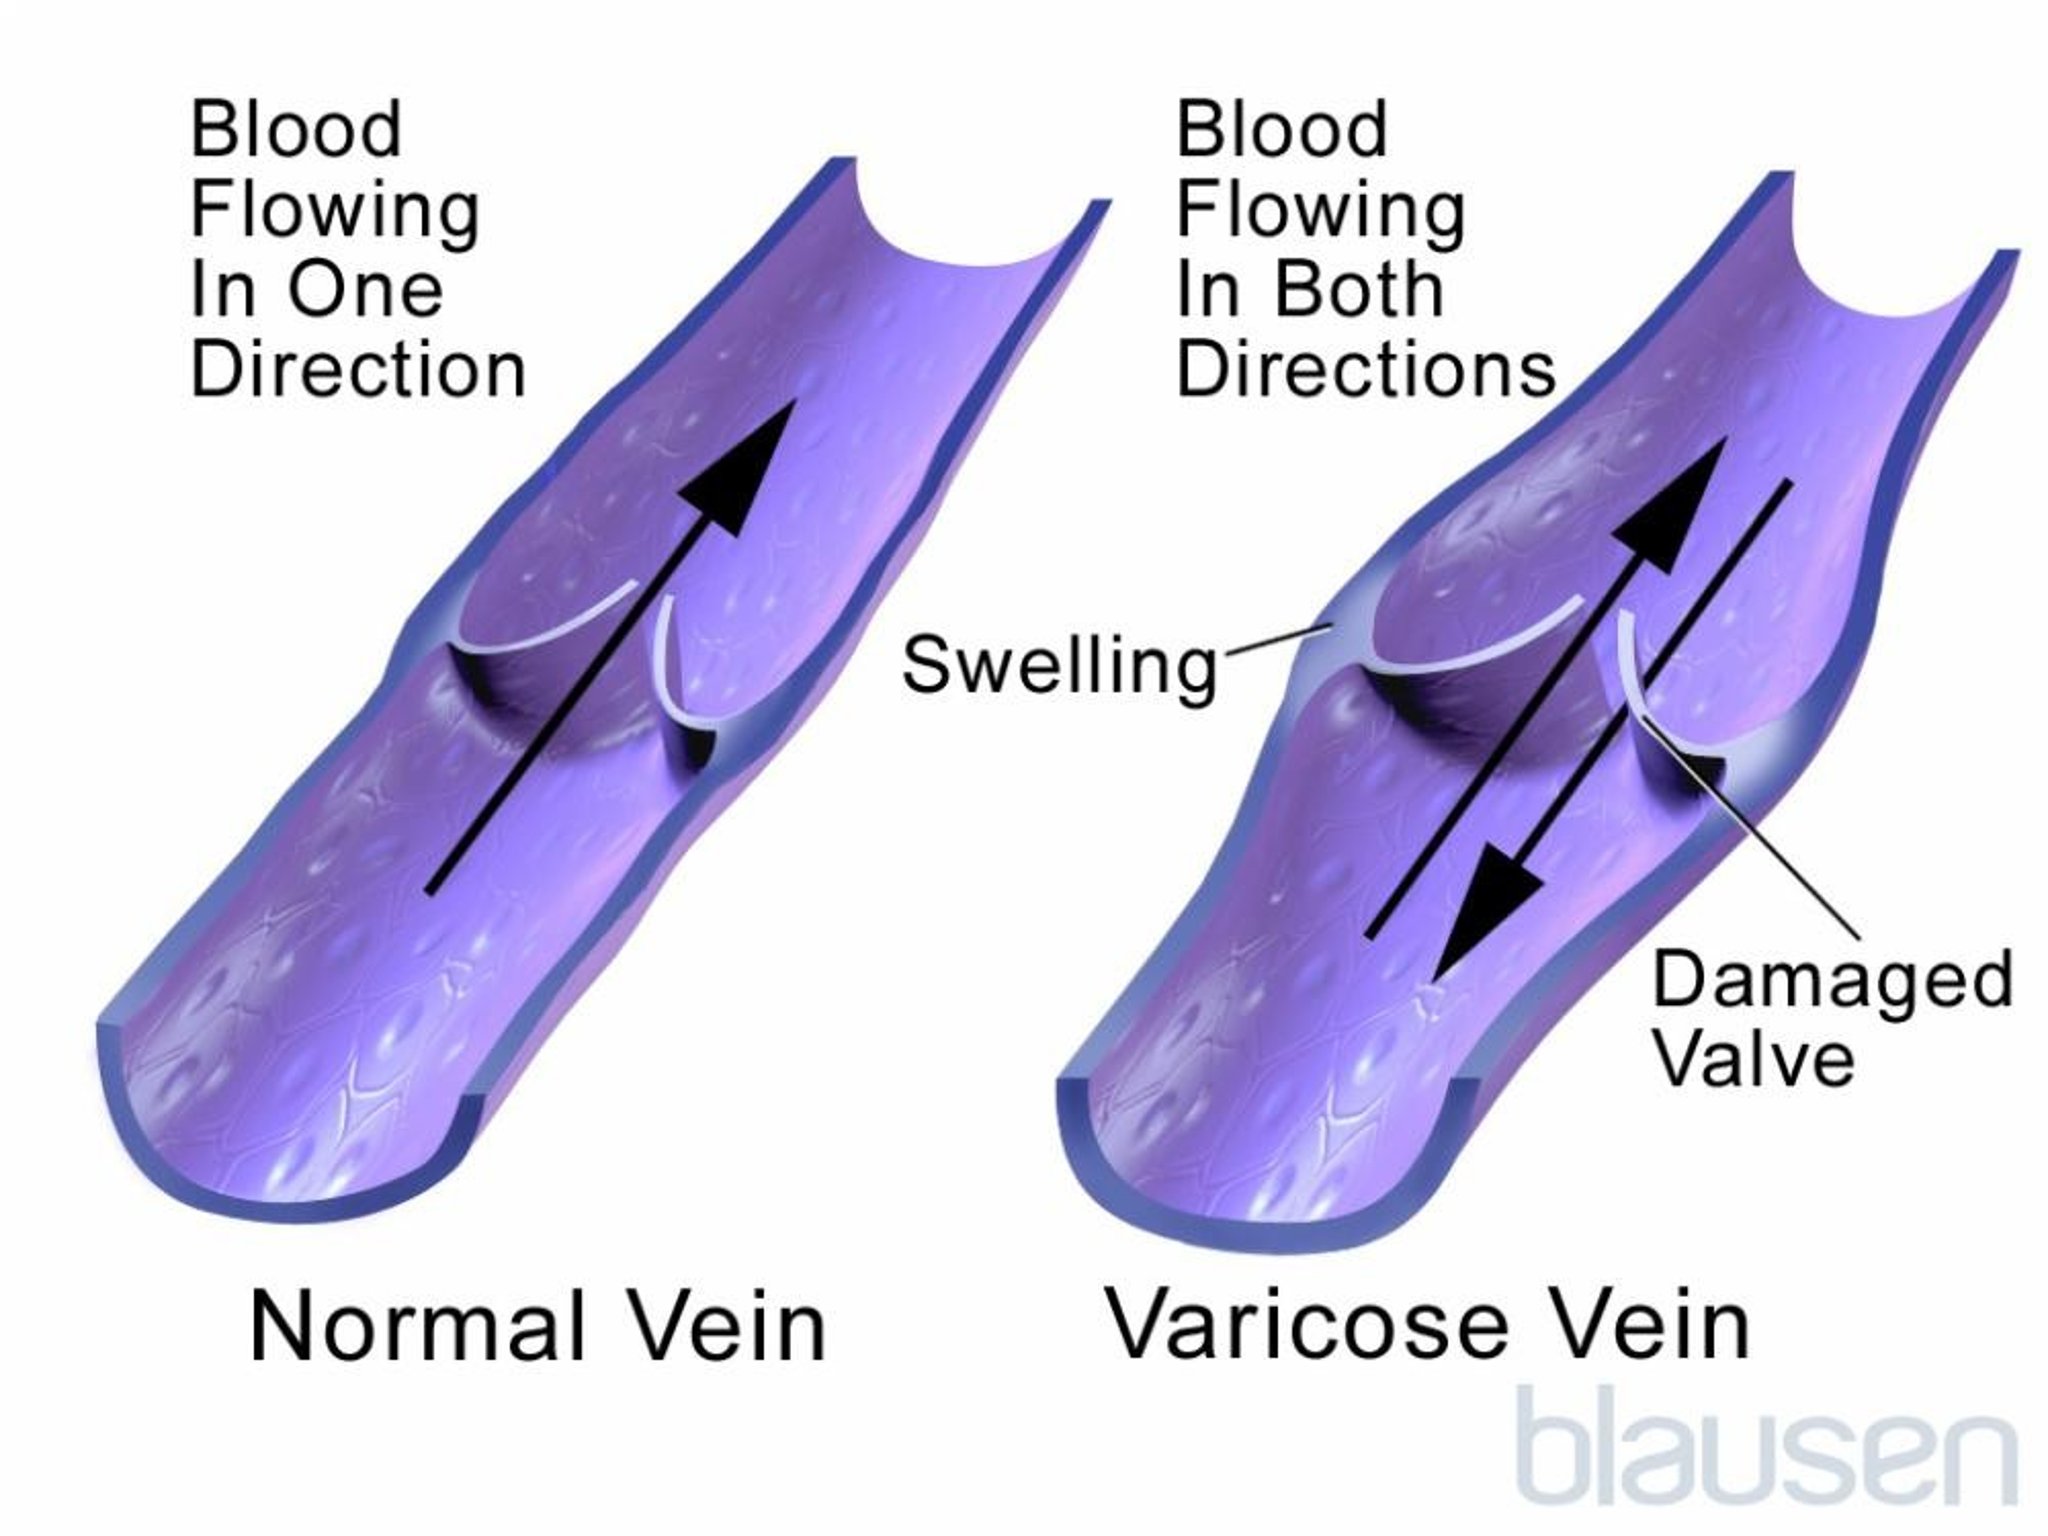 Blood Flow in Varicose Veins